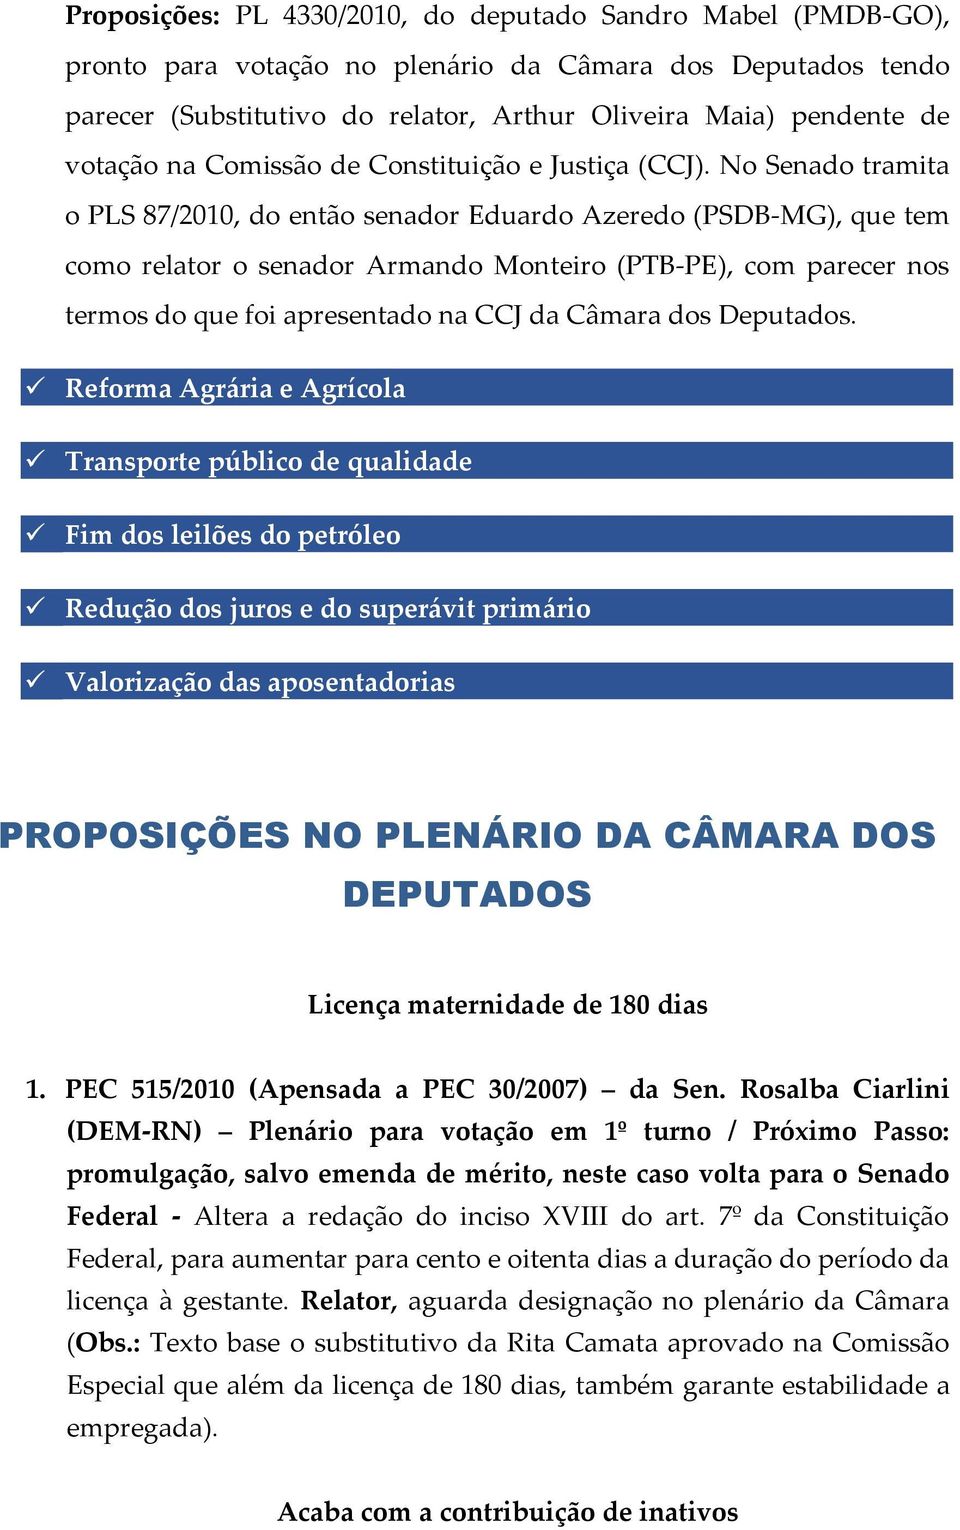 No Senado tramita o PLS 87/2010, do então senador Eduardo Azeredo (PSDB-MG), que tem como relator o senador Armando Monteiro (PTB-PE), com parecer nos termos do que foi apresentado na CCJ da Câmara